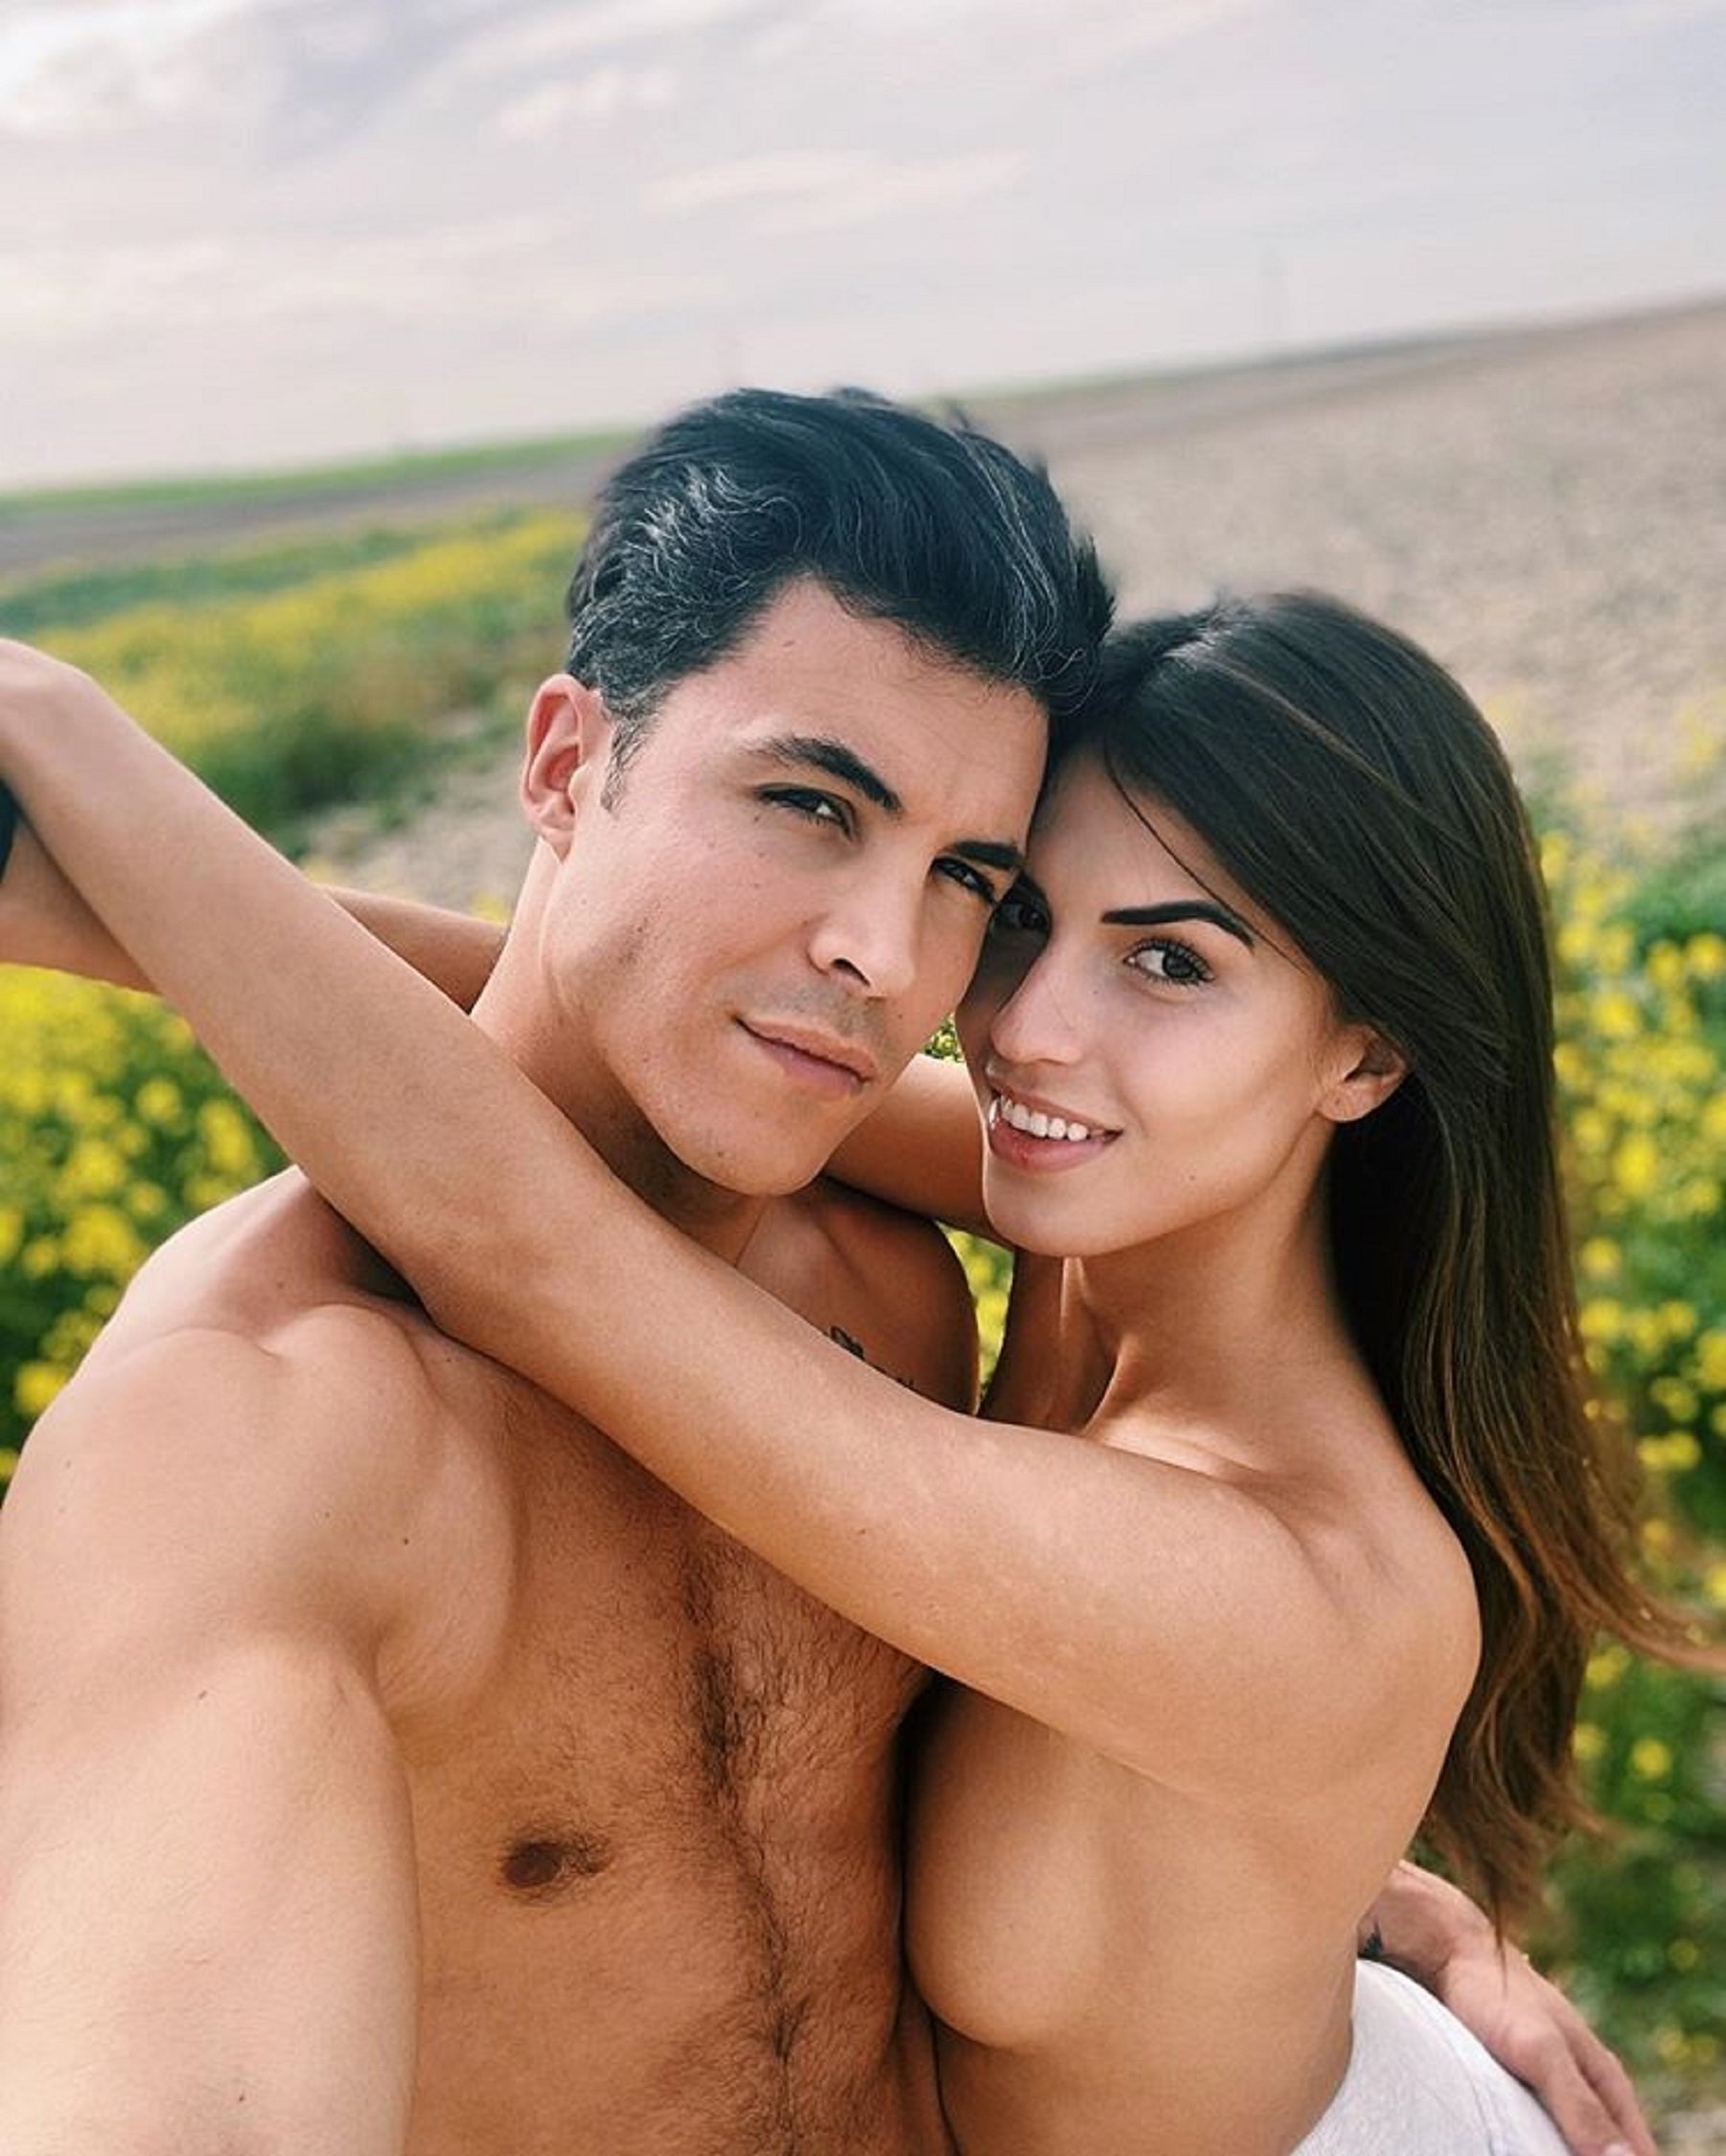 Kiko Jiménez, totalmente desnudo, grabado en vídeo por Sofía Suescun, su novia